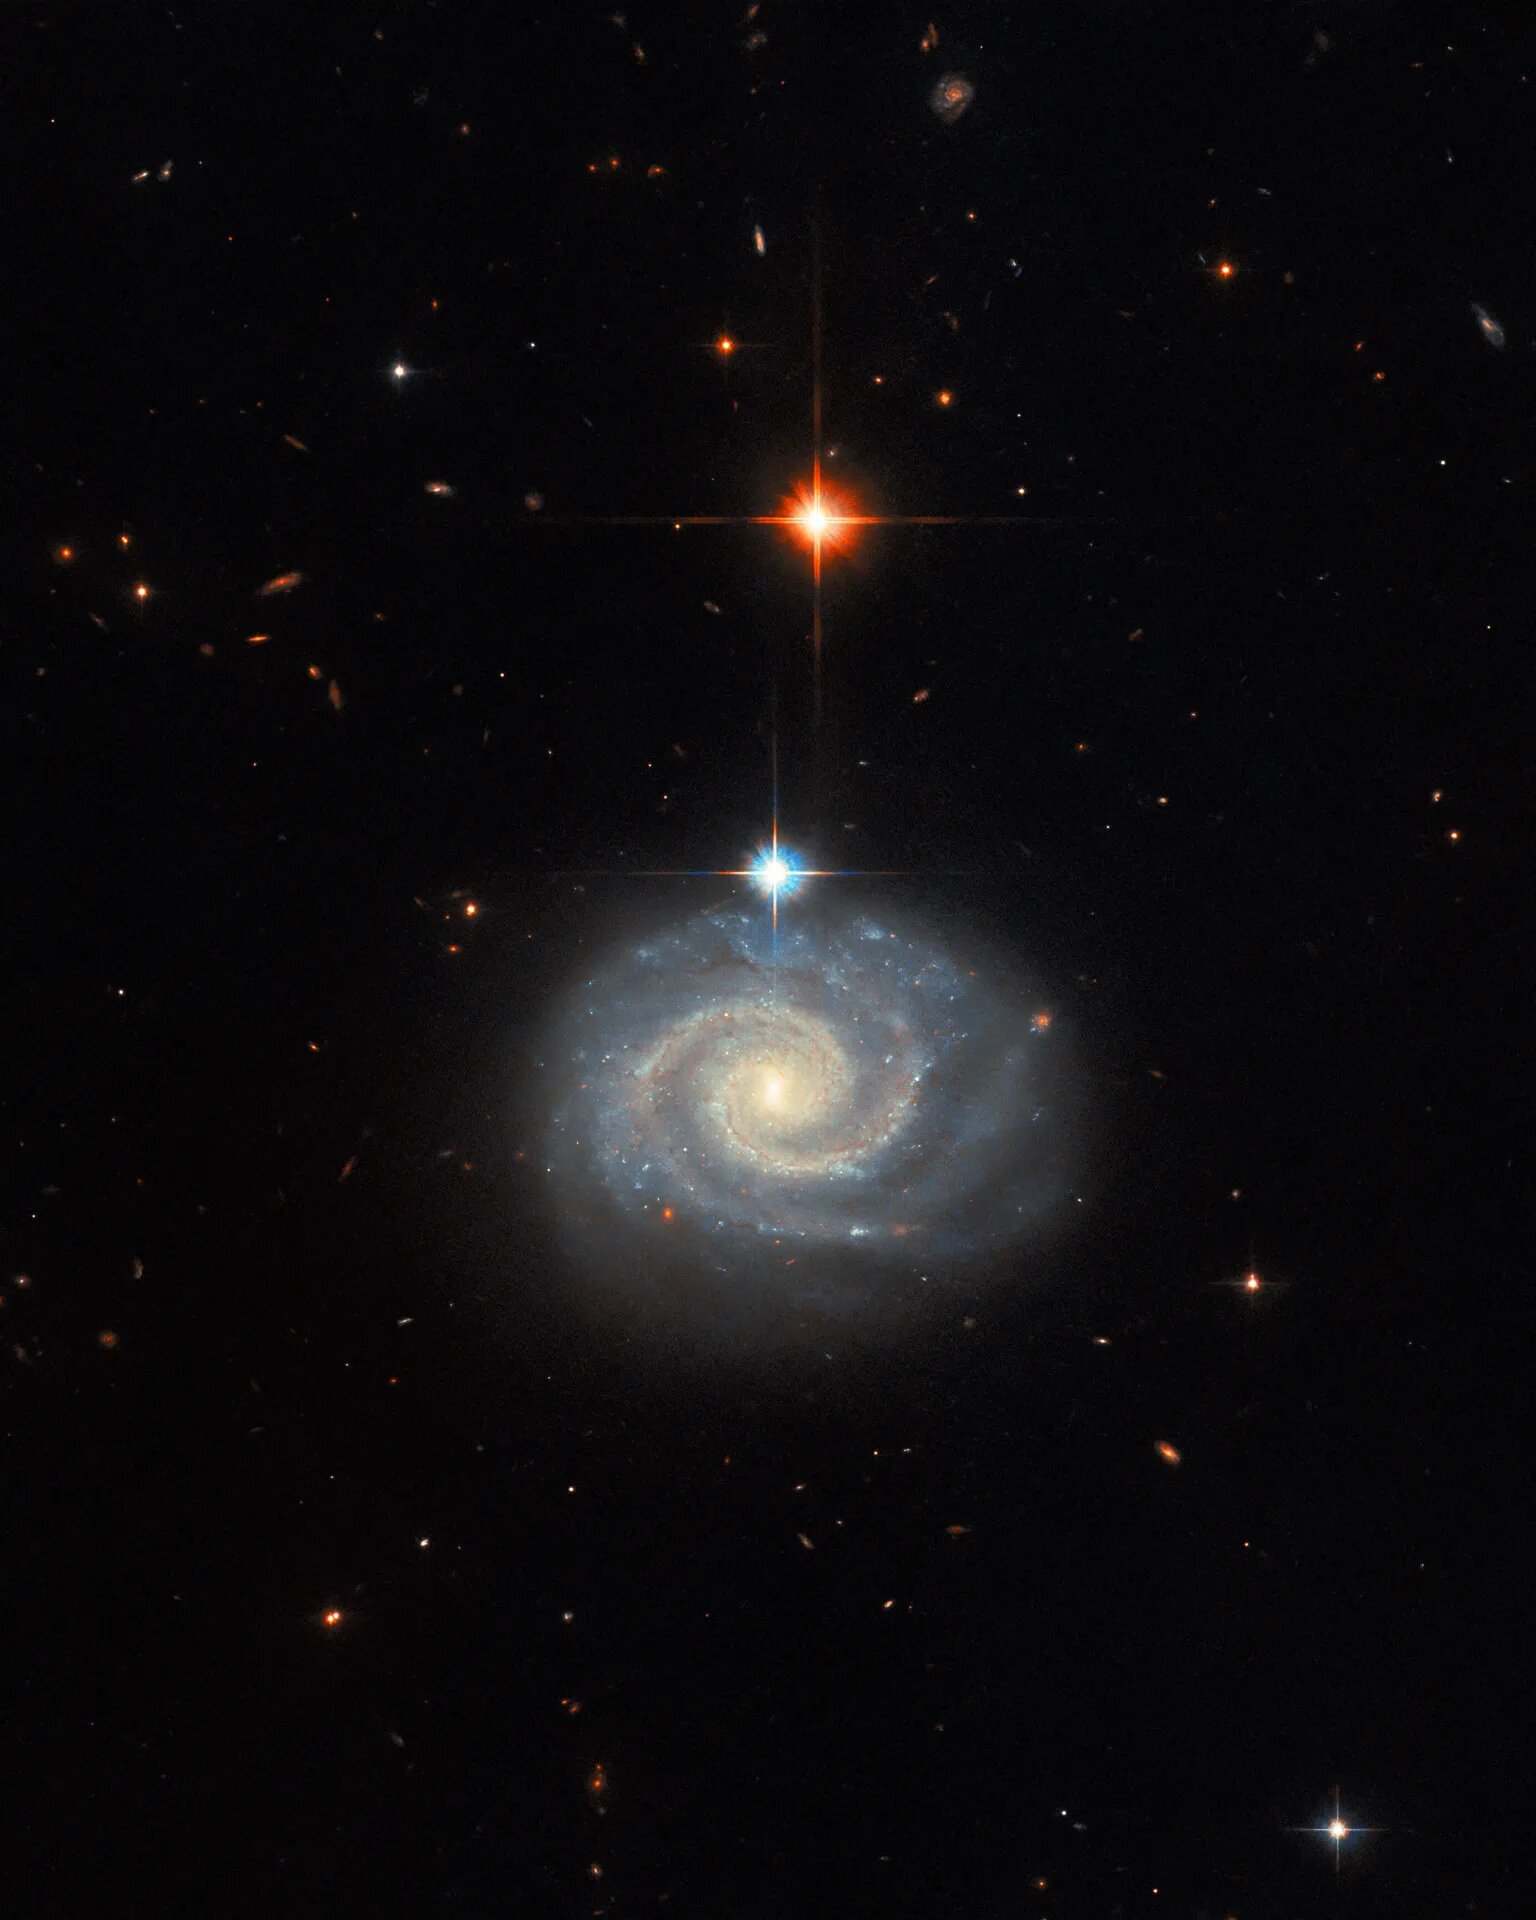 Ova slika NASA Hubble svemirskog teleskopa prikazuje svijetlu spiralnu galaksiju poznatu kao MCG-01-24-014, koja se nalazi oko 275 milijuna svjetlosnih godina od Zemlje. Zasluge: ESA